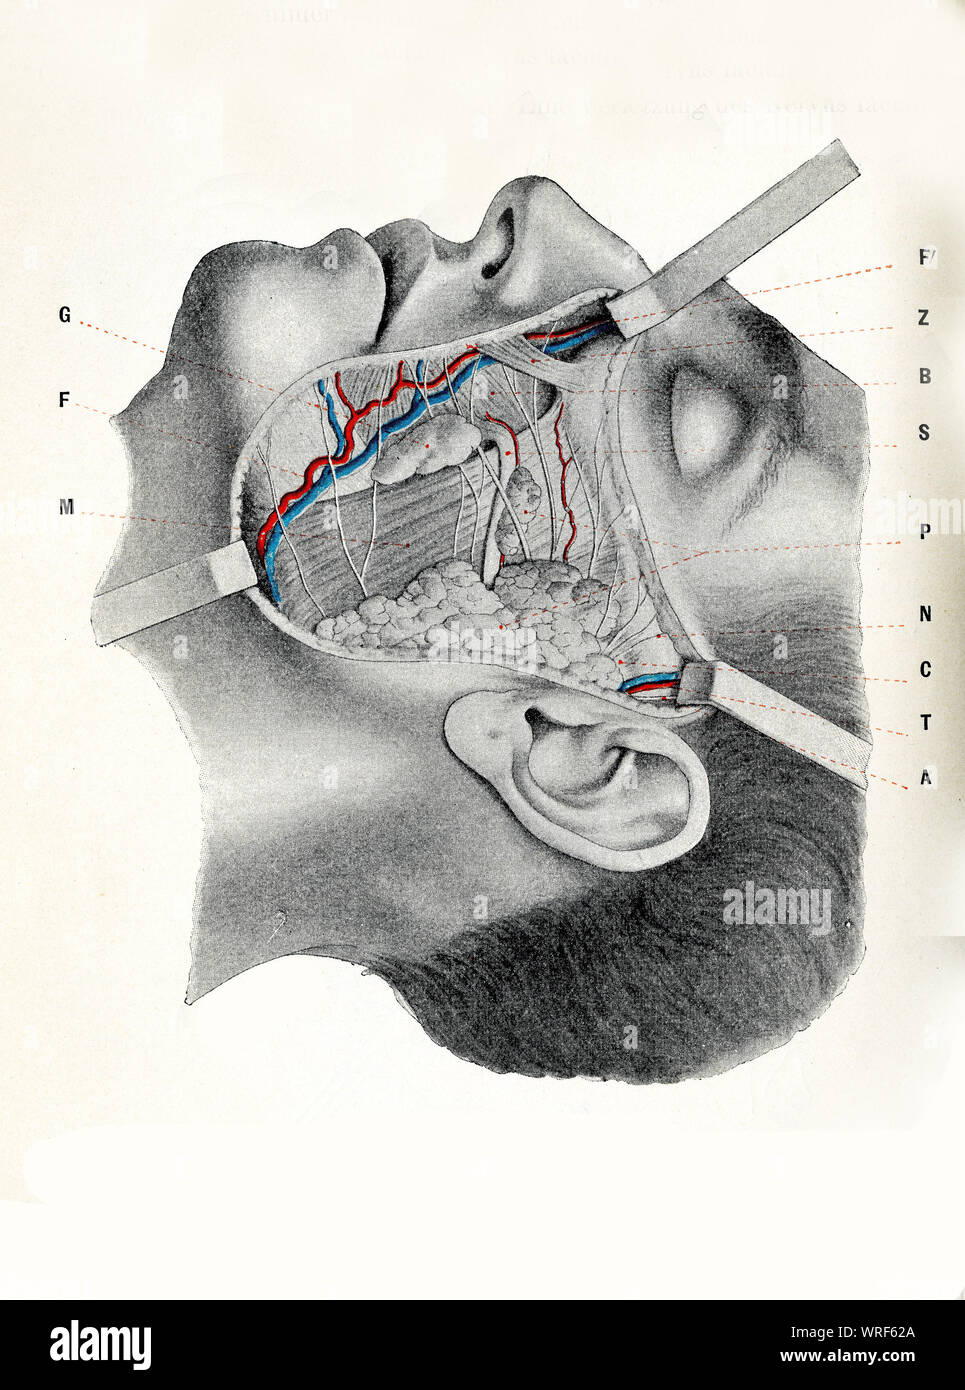 Chirurgie et médecine - région : joue, preauricolar buccomandibular suborbital et zonee exposé avec musculature faciale, de l'artère et la veine faciale Banque D'Images